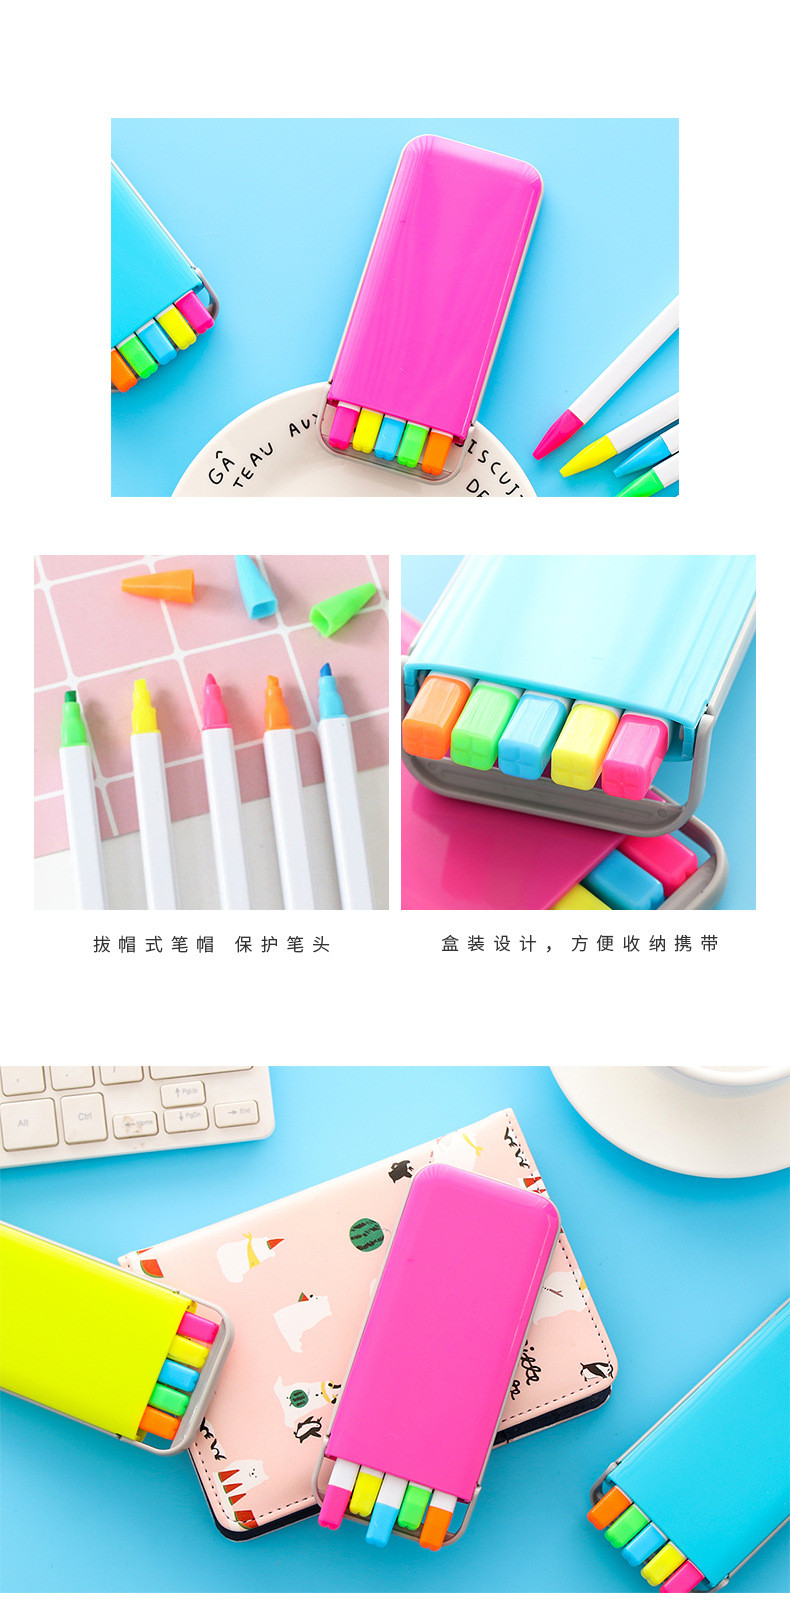 糖果色5色螢光筆組 學生必備多色記號筆 創意文具 多功能螢光筆組合